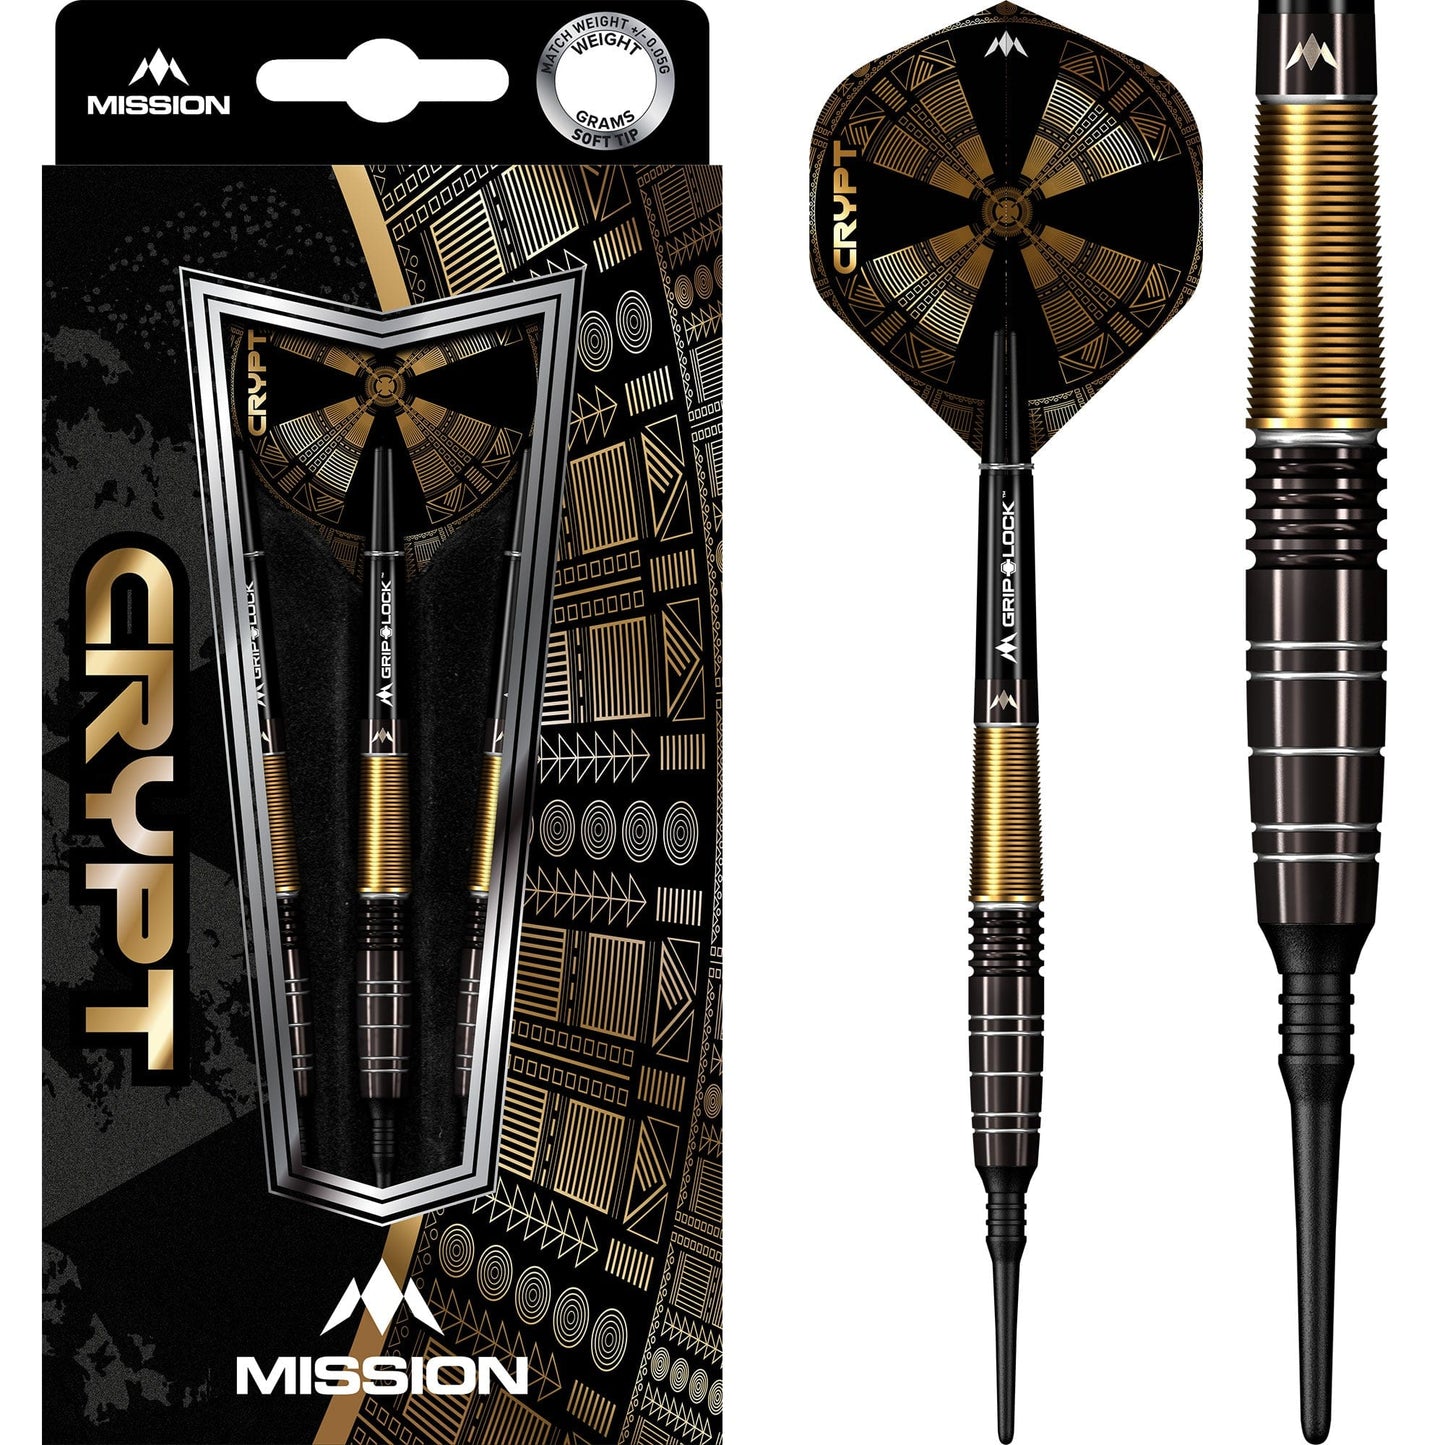 Mission Crypt Darts - Soft Tip - M1 - Black & Gold 20g